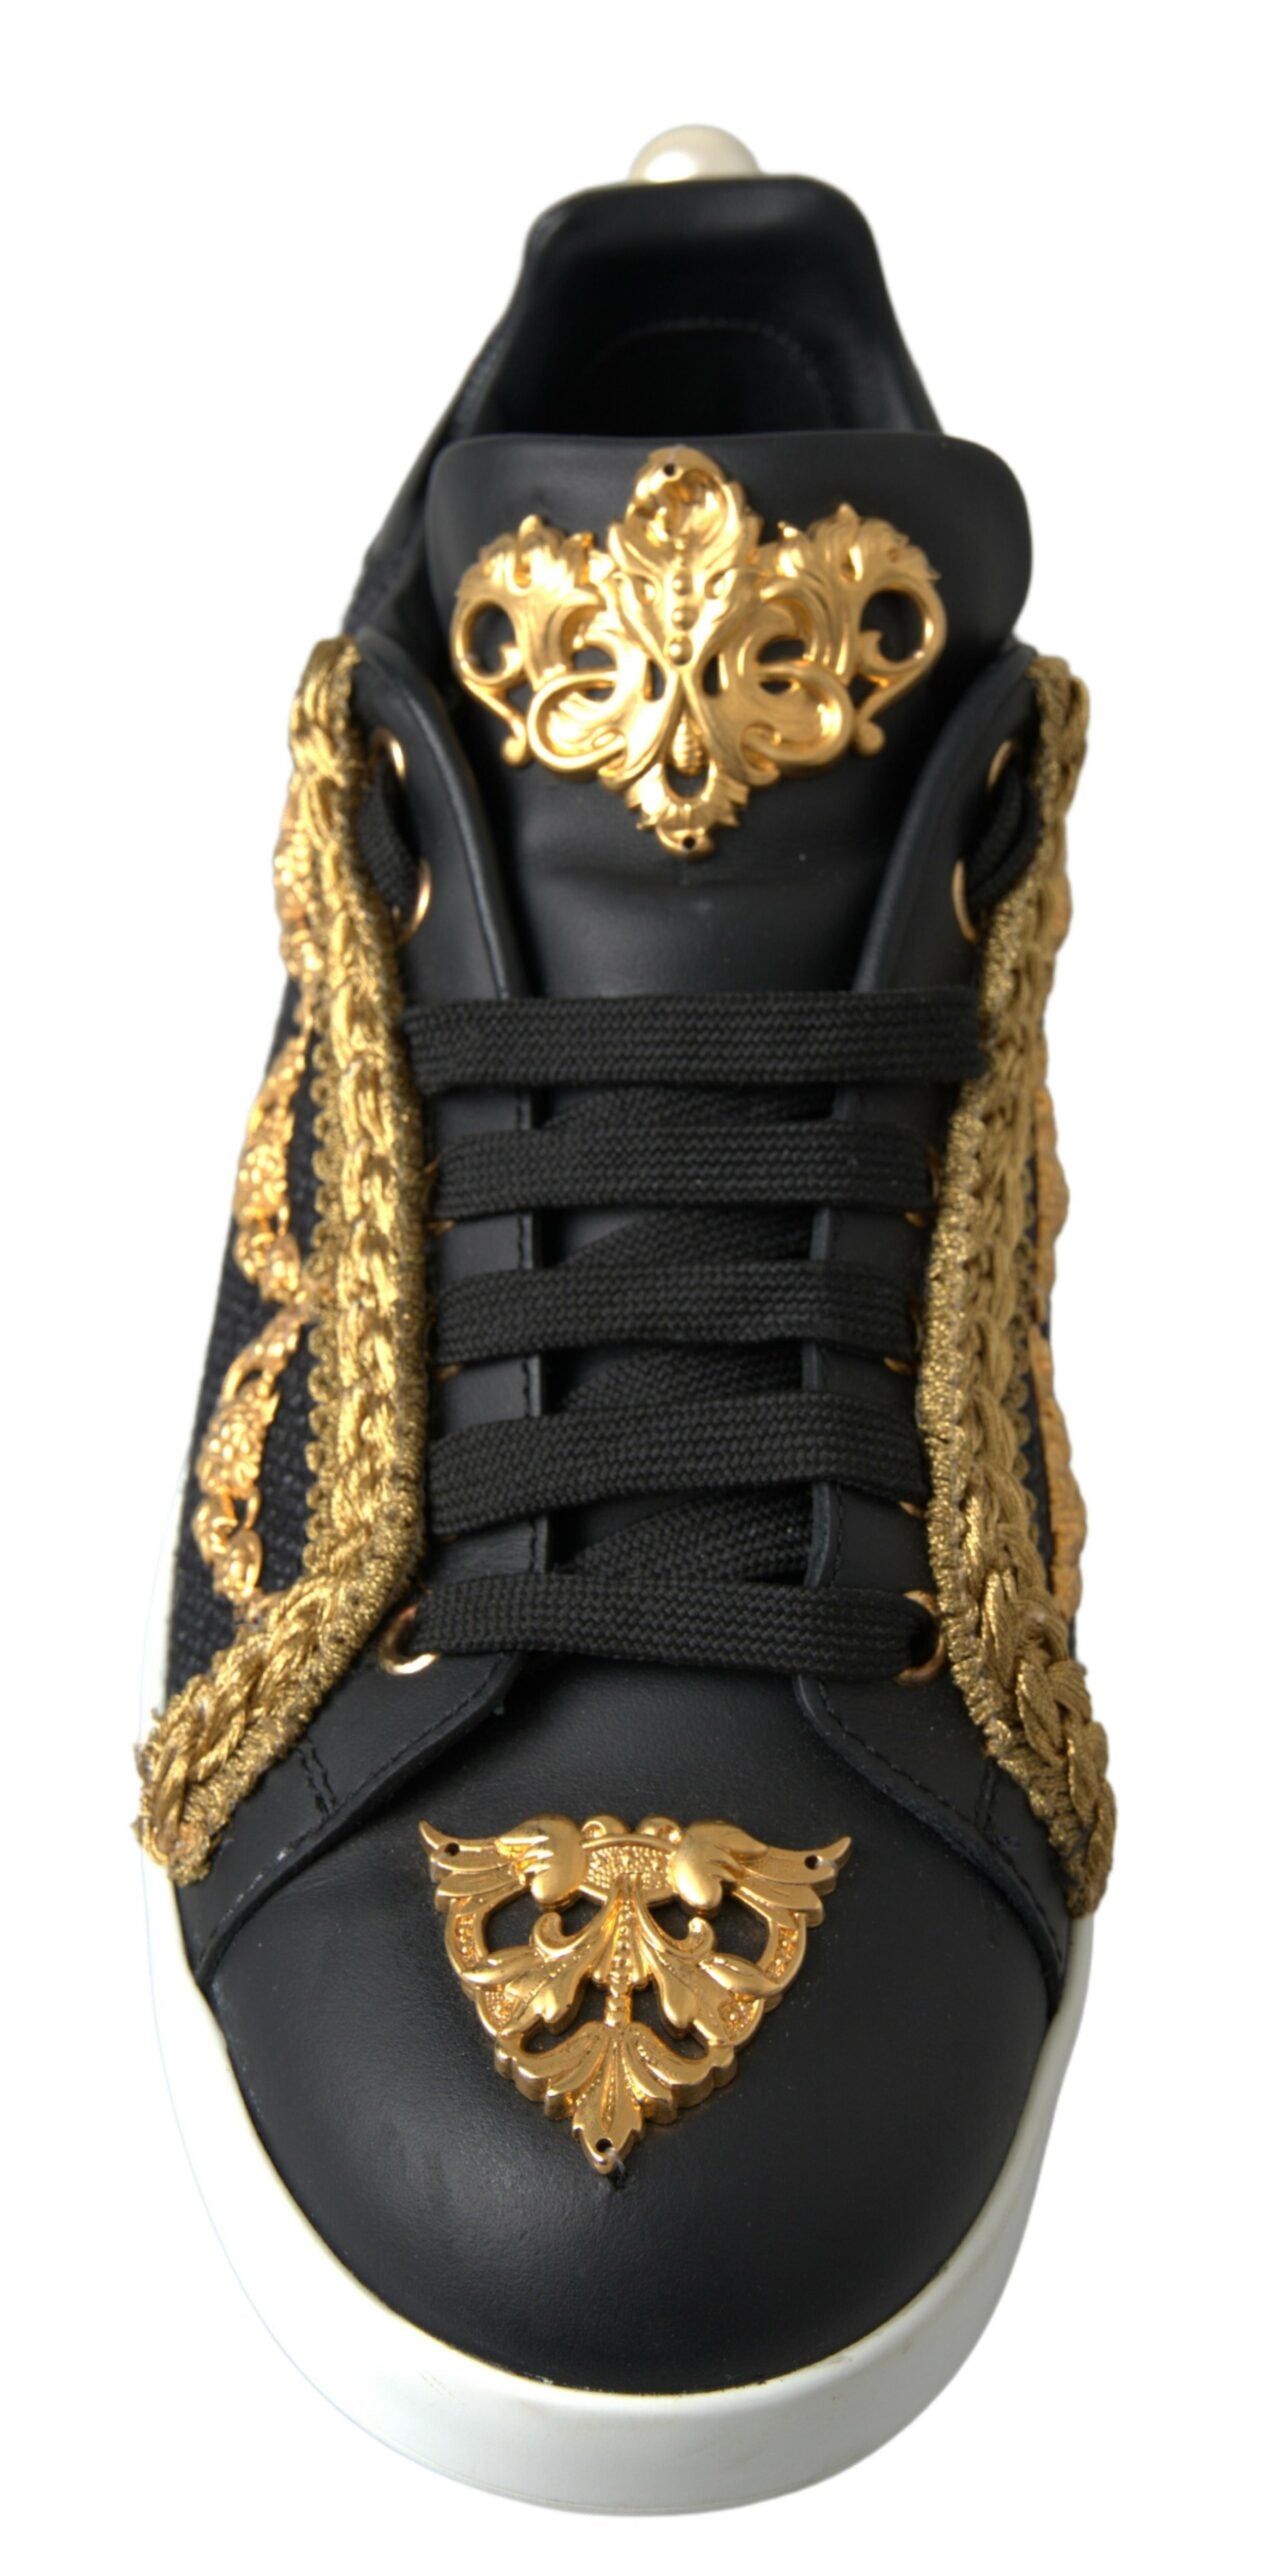 Dolce & Gabbana Elegant Portofino Sneakers in Black & Gold